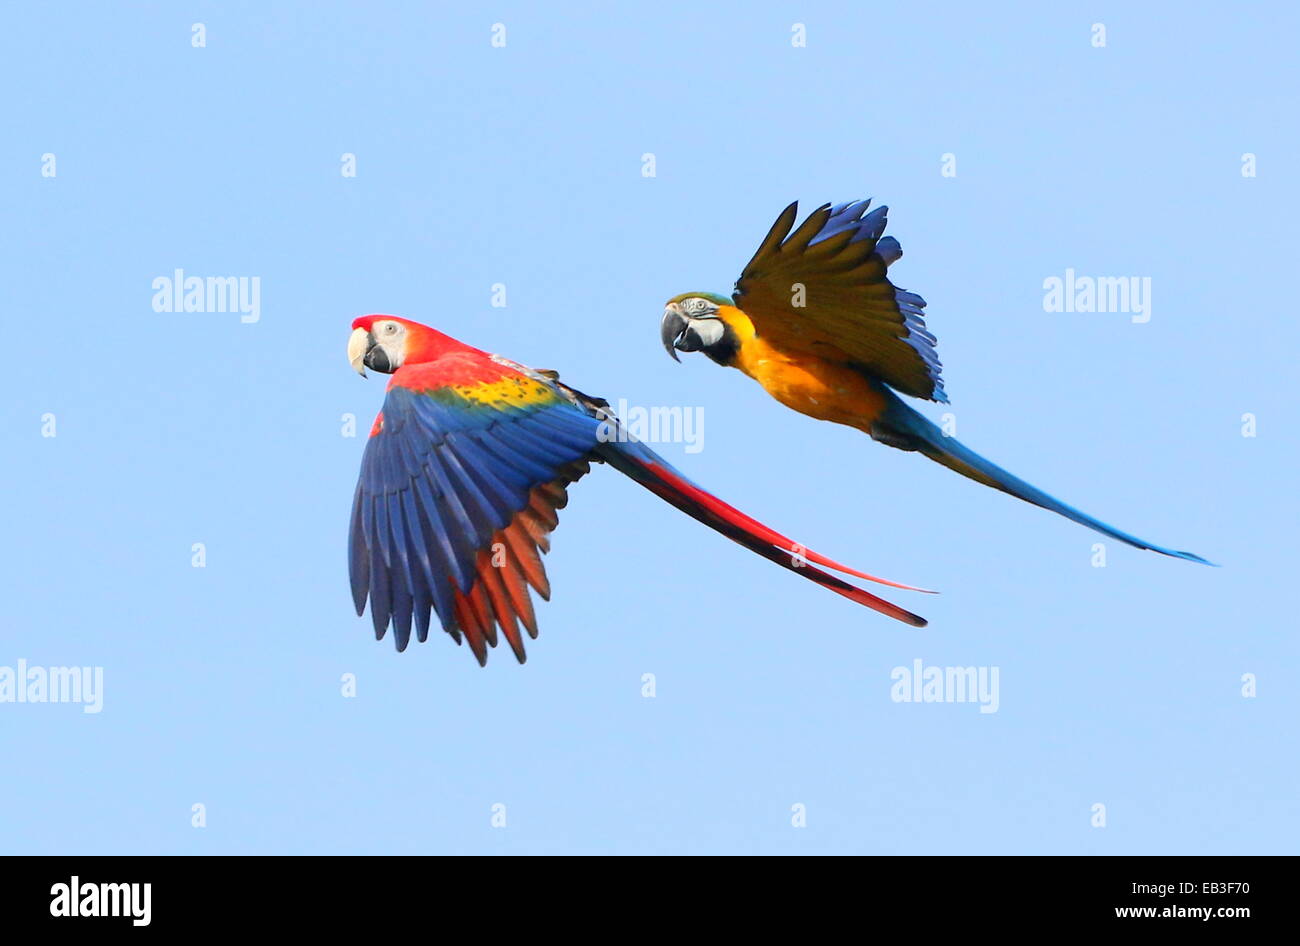 Ara bleu et jaune (Ara ararauna) en vol, rejoint par un ara rouge (Ara macao) Banque D'Images